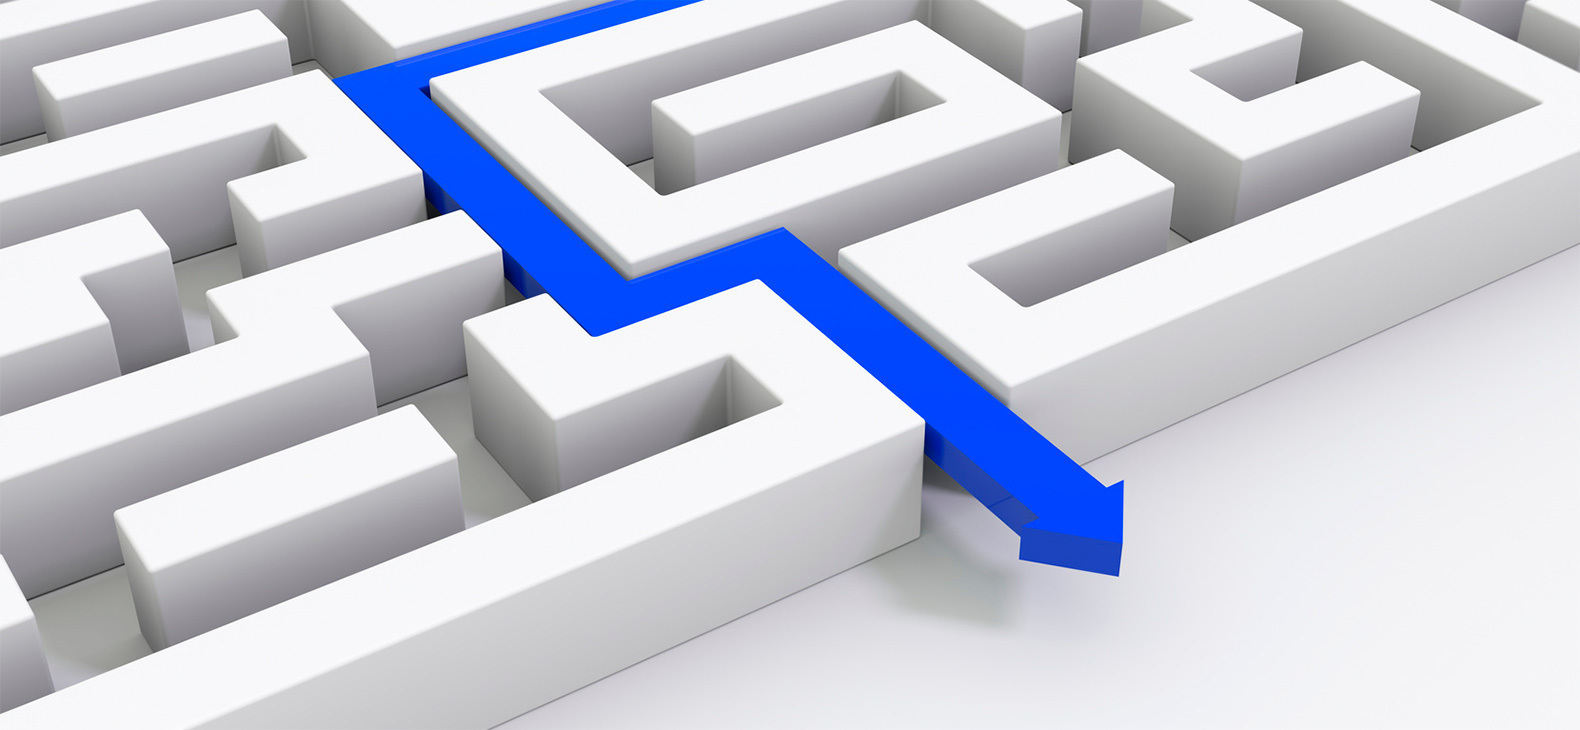 Räumliches Modell eines Labyrinths, aus dem ein blauer Pfeil den Weg hinaus zeigt.